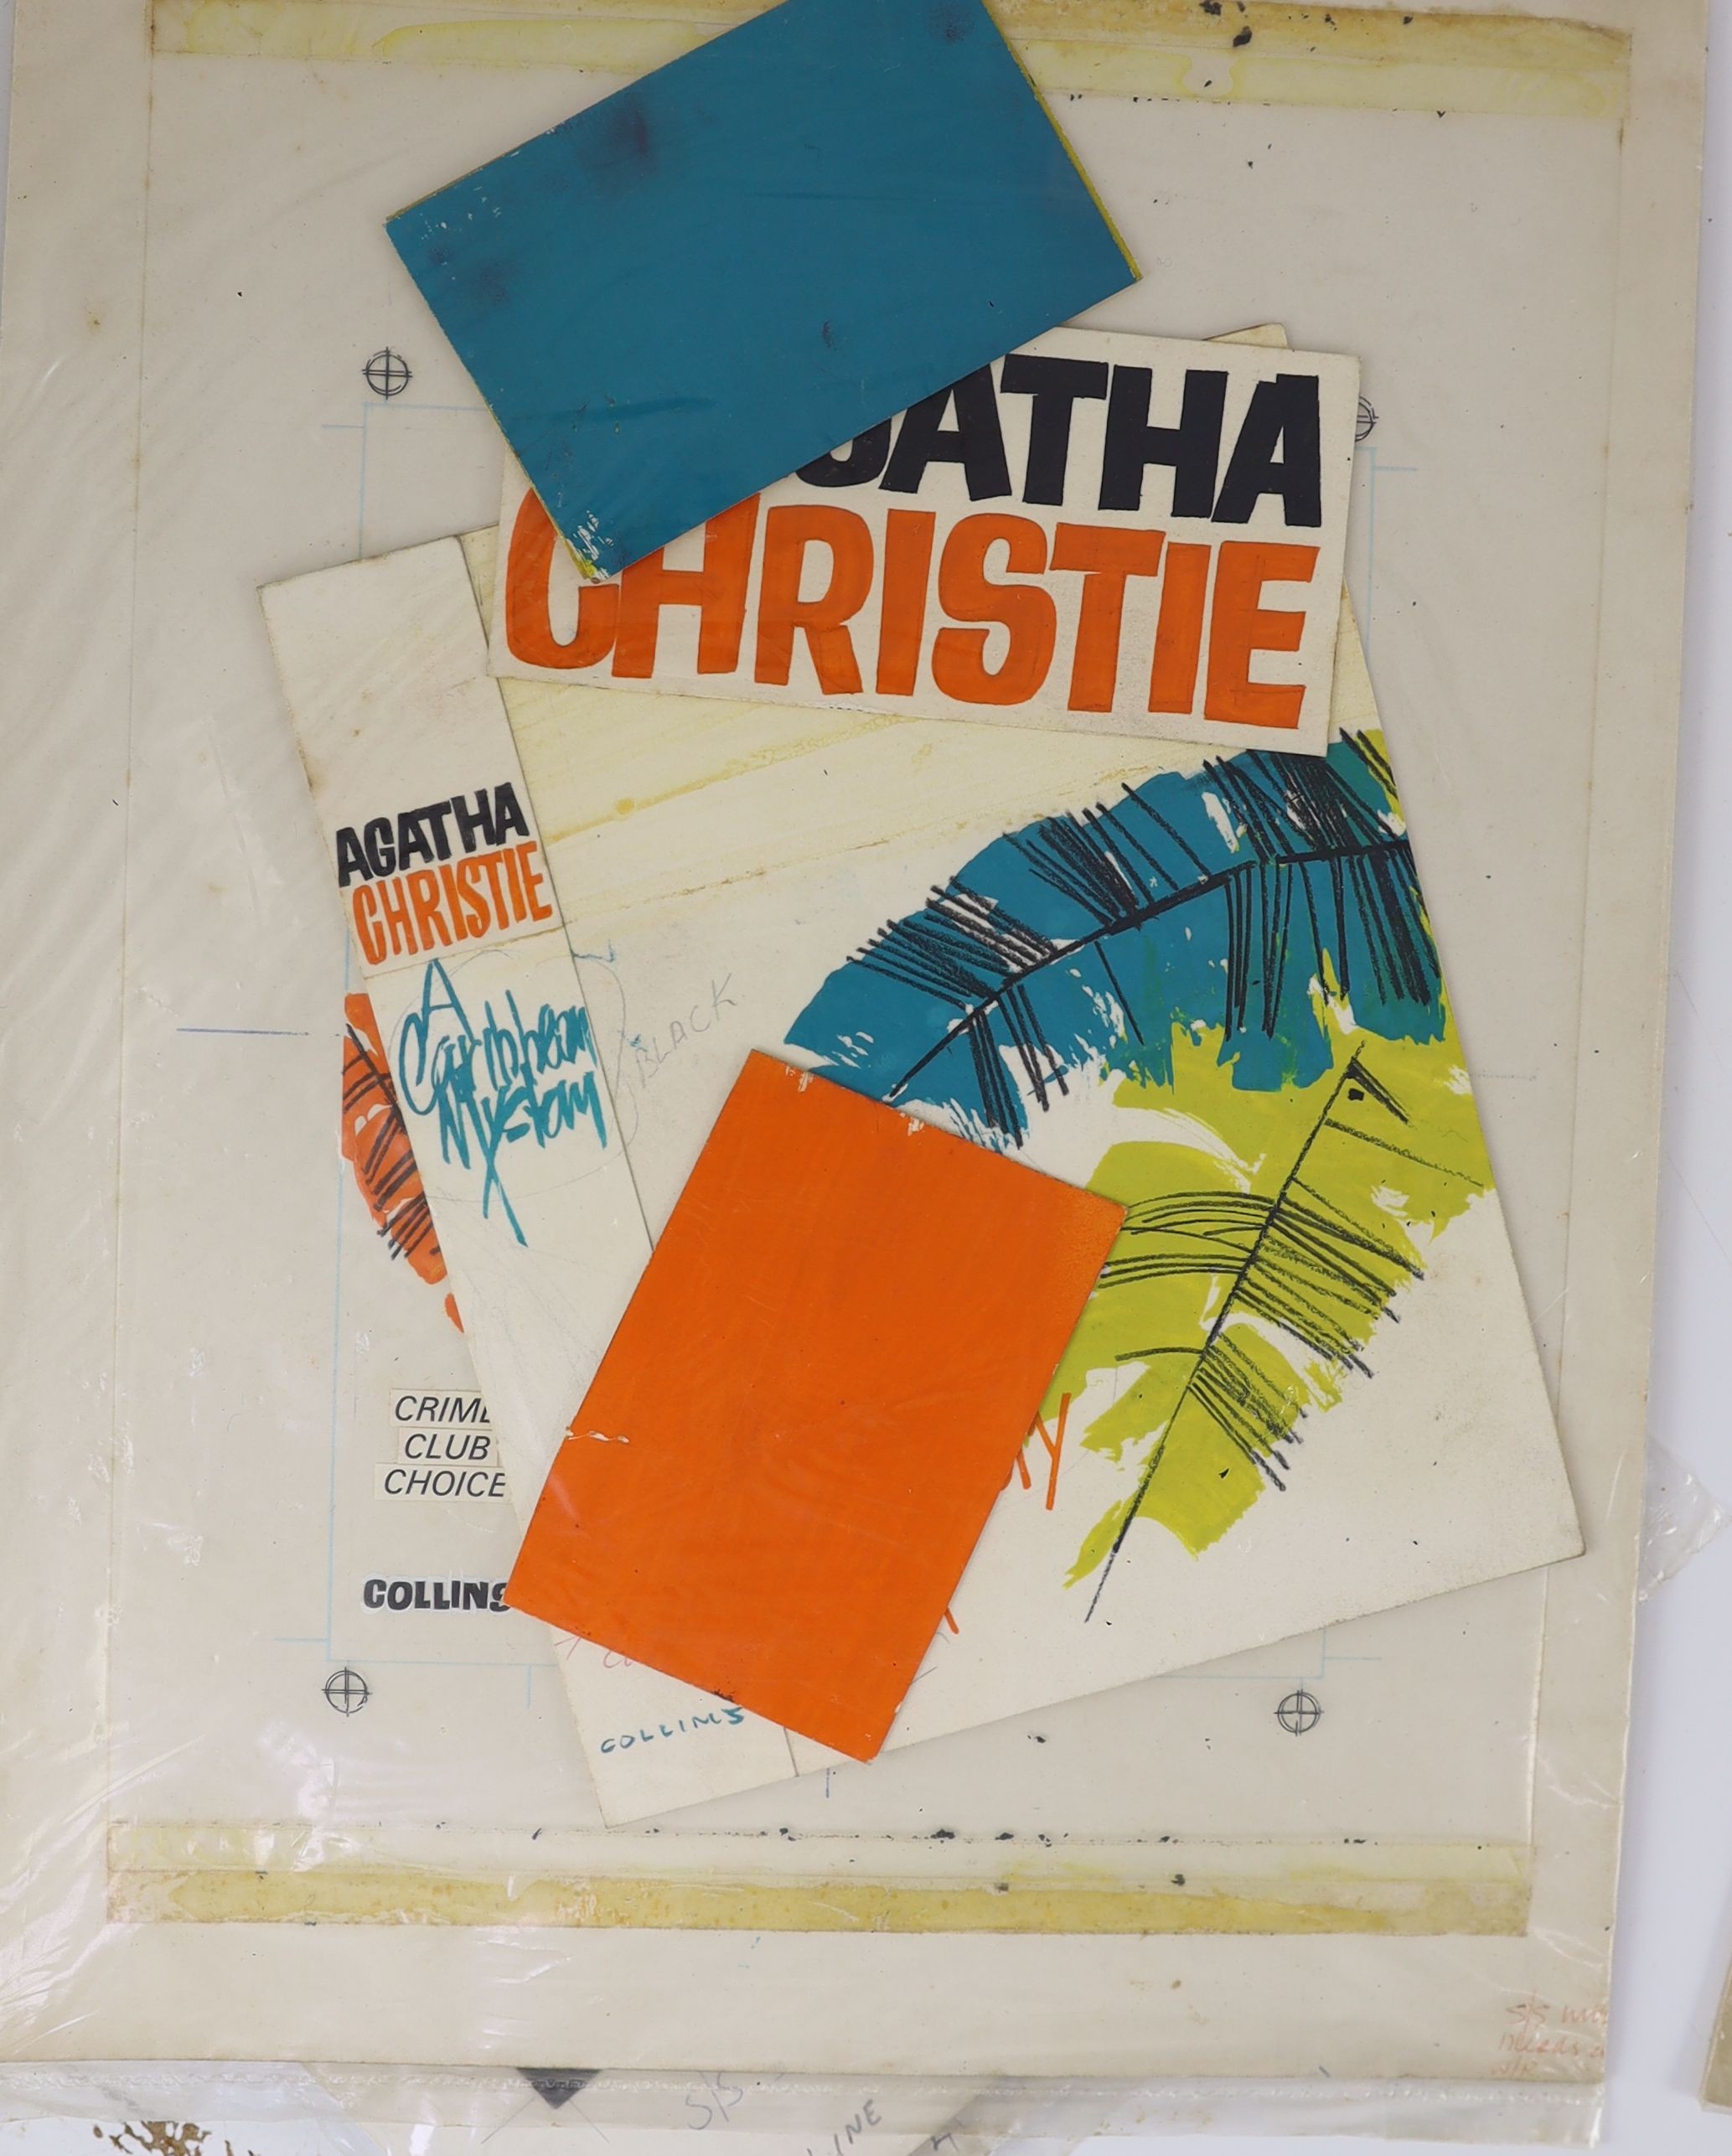 Farnhill, Kenneth, for Agatha Christe crime novels